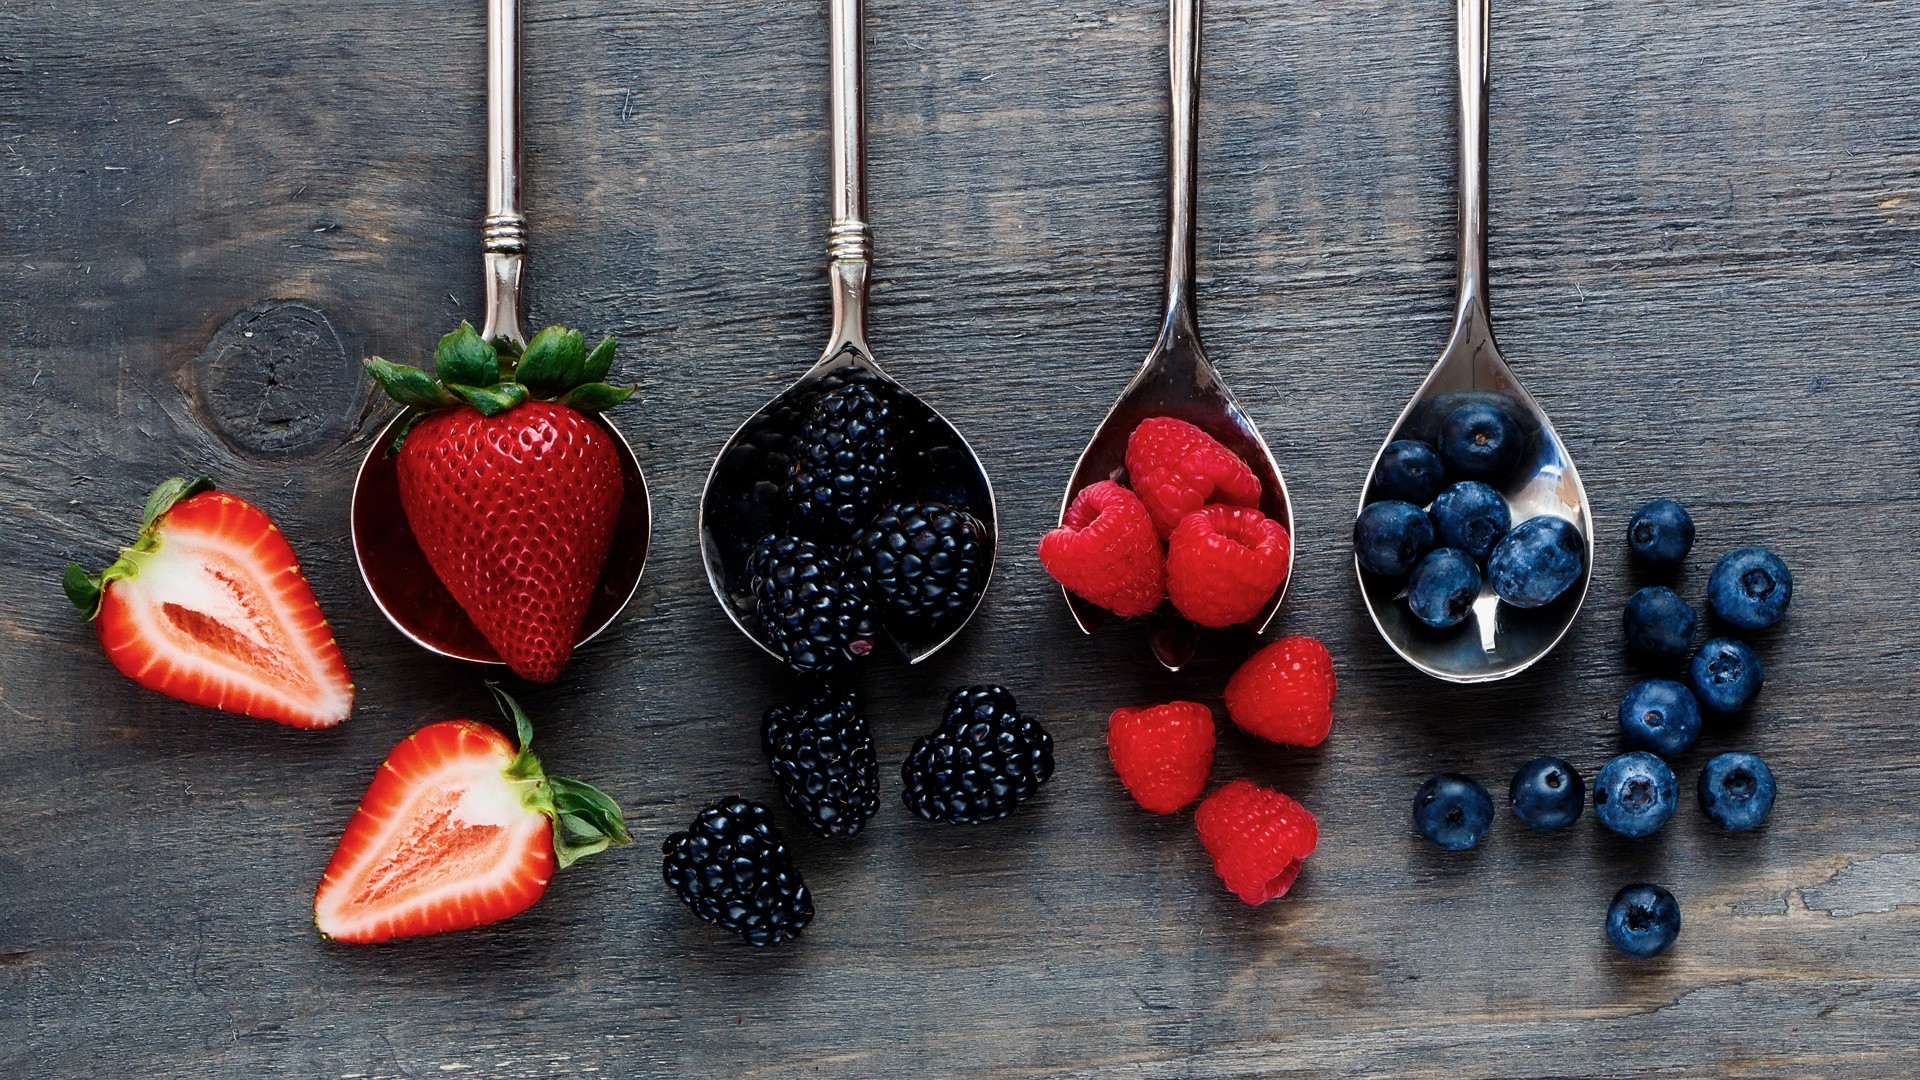 General 1920x1080 spoon fruit food strawberries blackberries blueberries raspberries berries